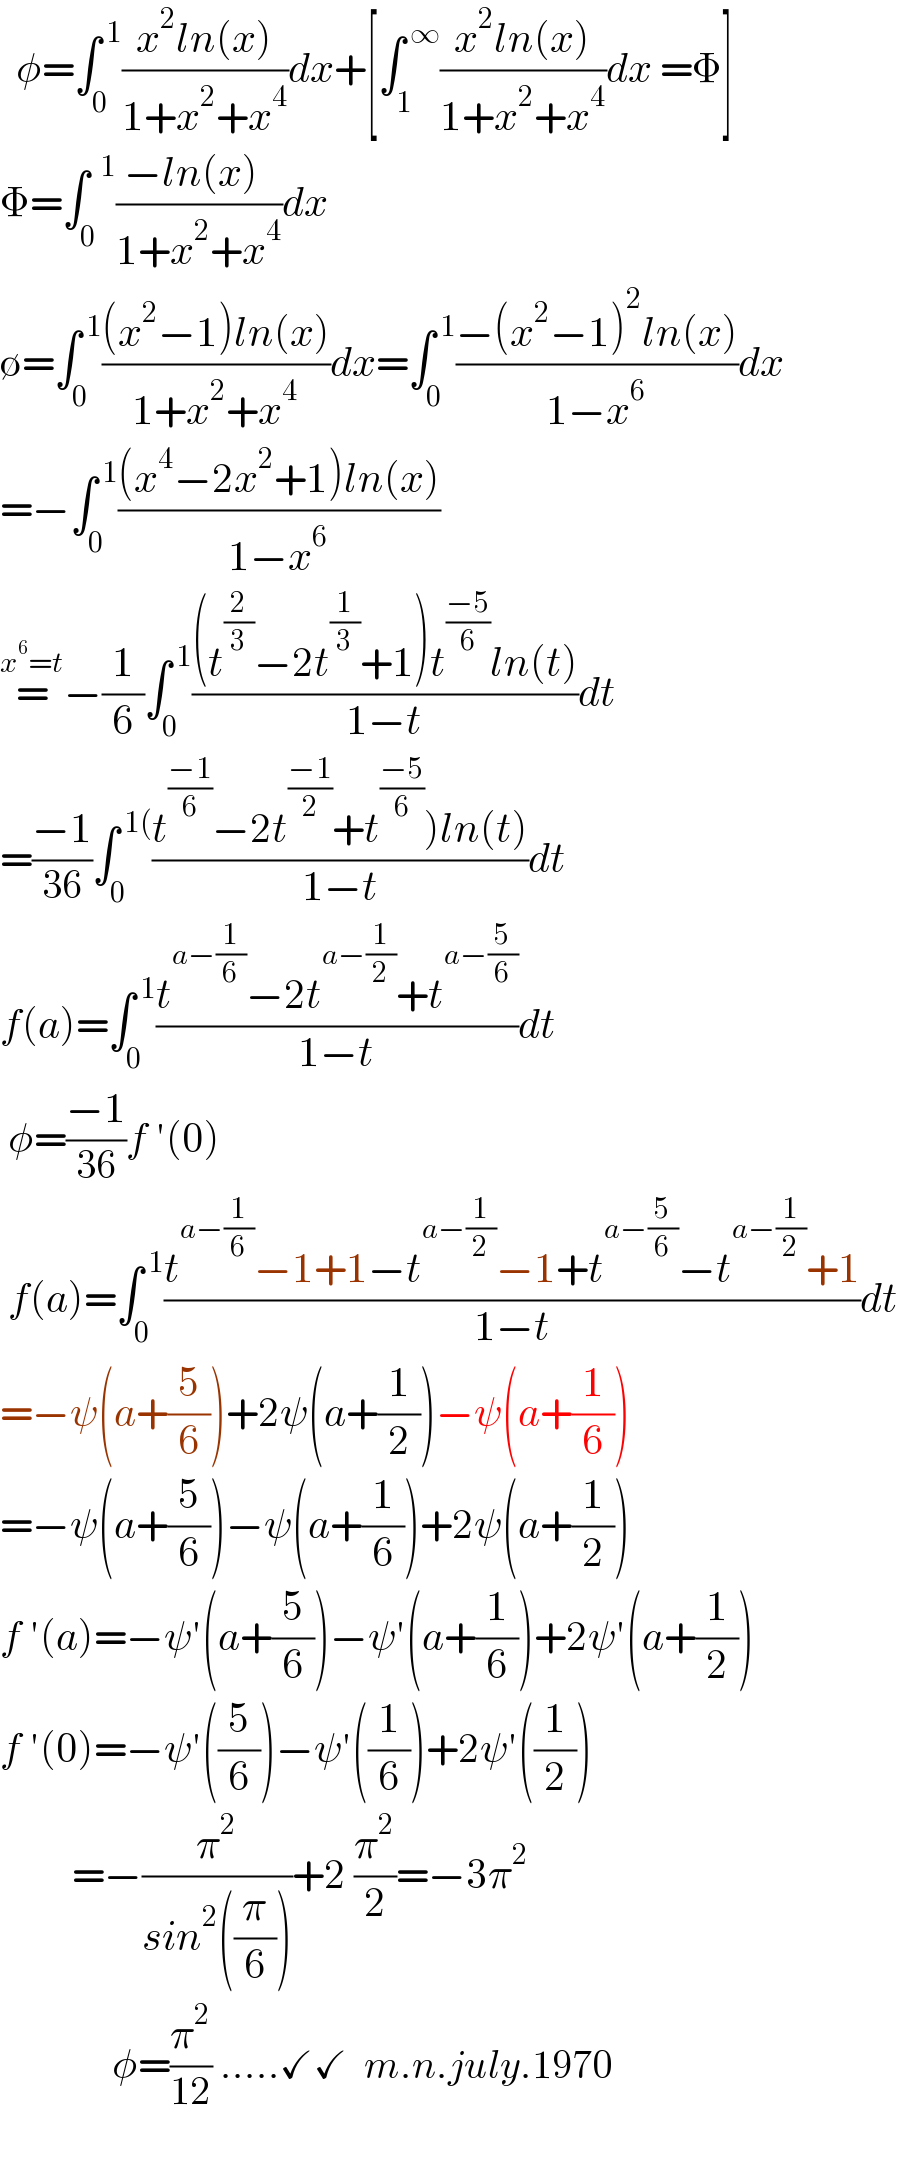   φ=∫_(0 ) ^( 1) ((x^2 ln(x))/(1+x^2 +x^4 ))dx+[∫_1 ^( ∞) ((x^2 ln(x))/(1+x^2 +x^4 ))dx =Φ]  Φ=∫_0 ^(  1) ((−ln(x)  )/(1+x^2 +x^4 ))dx  ∅=∫_0 ^( 1) (((x^2 −1)ln(x))/(1+x^2 +x^4 ))dx=∫_0 ^( 1) ((−(x^2 −1)^2 ln(x))/(1−x^6 ))dx  =−∫_0 ^( 1) (((x^4 −2x^2 +1)ln(x))/(1−x^6 ))  =^(x^6 =t) −(1/6)∫_0 ^( 1) (((t^(2/3) −2t^(1/3) +1)t^((−5)/6) ln(t))/(1−t))dt  =((−1)/(36))∫_0 ^( 1() ((t^((−1)/6) −2t^((−1)/2) +t^((−5)/6) )ln(t))/(1−t))dt   f(a)=∫_0 ^( 1) ((t^(a−(1/6)) −2t^(a−(1/2)) +t^(a−(5/6)) )/(1−t))dt   φ=((−1)/(36))f ′(0)   f(a)=∫_0 ^( 1) ((t^(a−(1/6)) −1+1−t^(a−(1/2)) −1+t^(a−(5/6)) −t^(a−(1/2)) +1)/(1−t))dt  =−ψ(a+(5/6))+2ψ(a+(1/2))−ψ(a+(1/6))  =−ψ(a+(5/6))−ψ(a+(1/6))+2ψ(a+(1/2))  f ′(a)=−ψ′(a+(5/6))−ψ′(a+(1/6))+2ψ′(a+(1/2))  f ′(0)=−ψ′((5/6))−ψ′((1/6))+2ψ′((1/2))           =−(π^2 /(sin^2 ((π/6))))+2 (π^2 /2)=−3π^2                 φ=(π^2 /(12)) .....✓✓  m.n.july.1970    